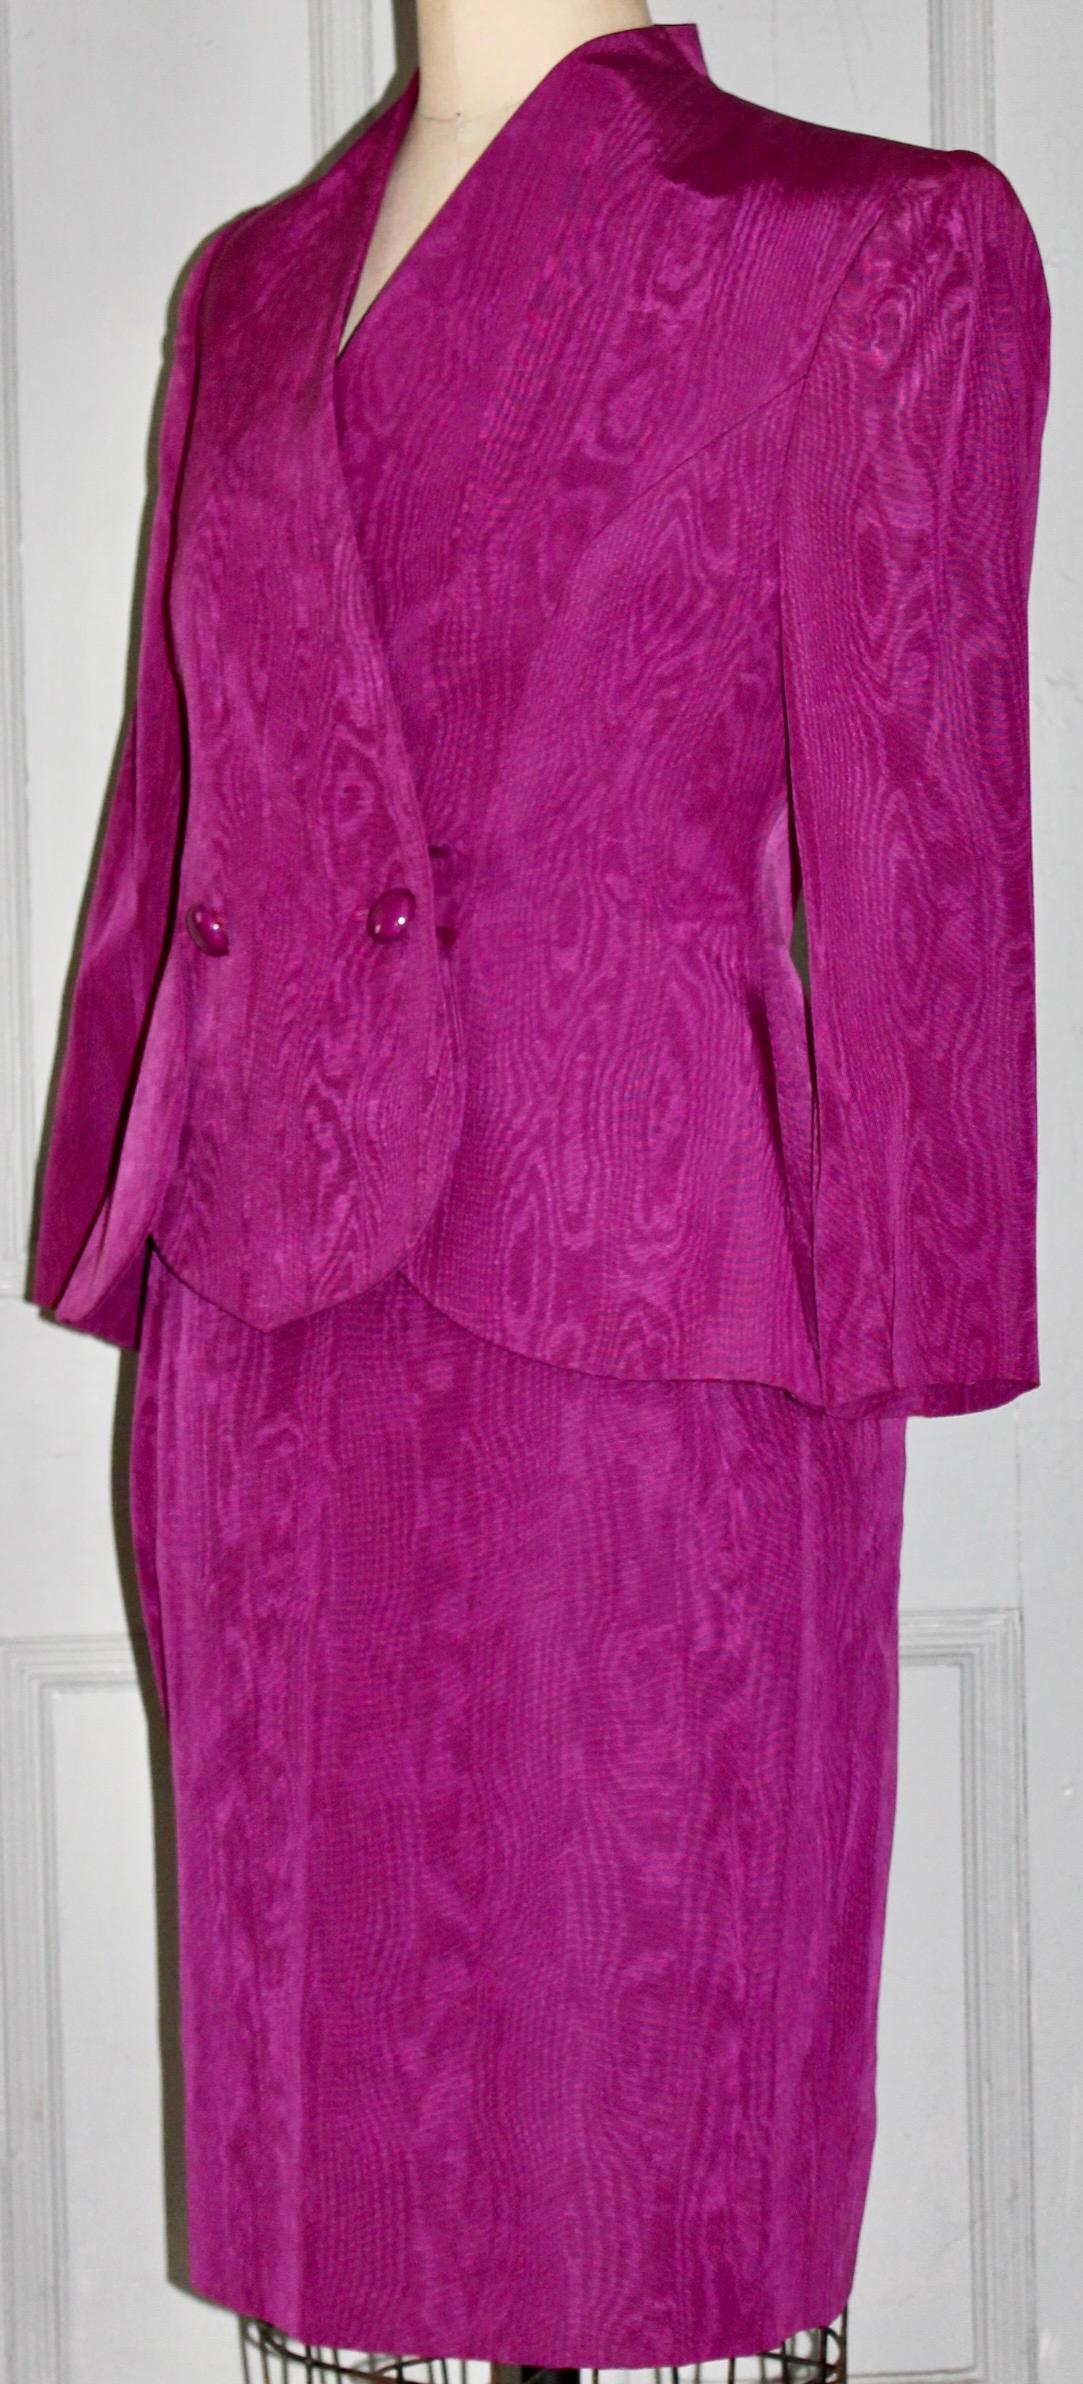 Vintage Lanvin 1980's Magenta Moire Suit (Jacket and Skirt) in the style of YSL. Taille 42, coton/rayon et labellisé : Lanvin Paris, Made in France. Longueur de la jupe 24